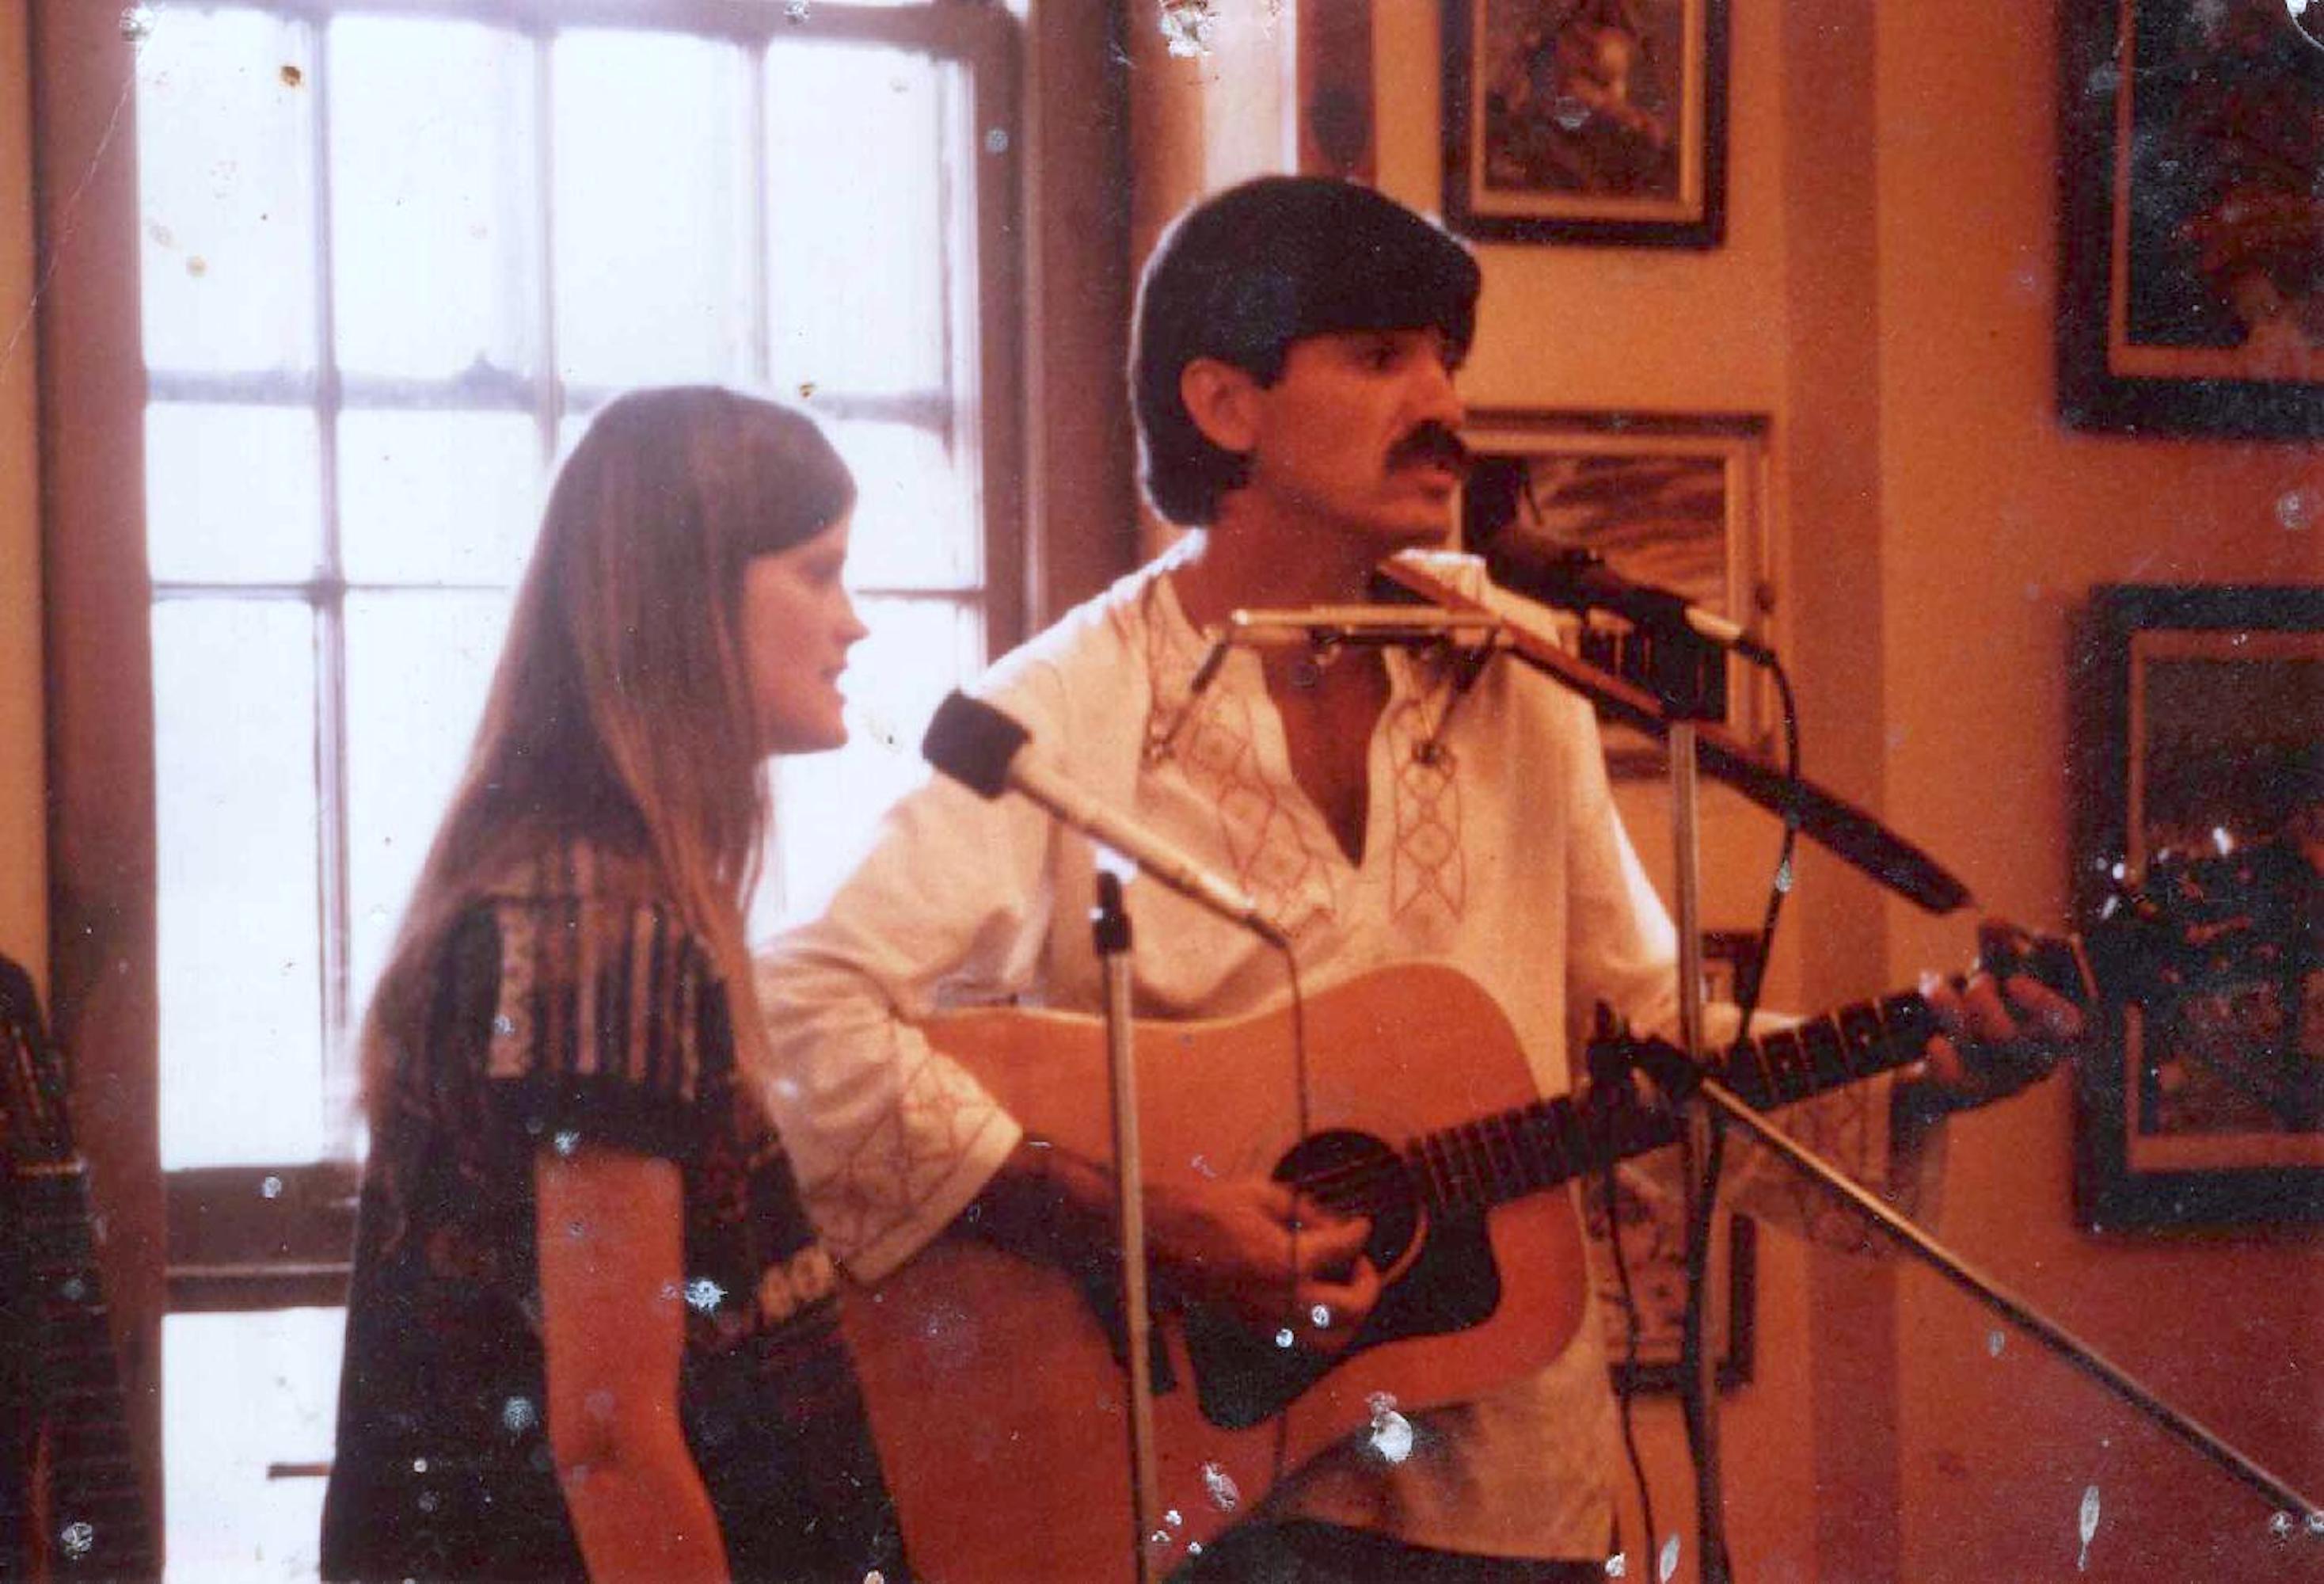 Ron Vanscoyk and Laurel performing music, 1988.